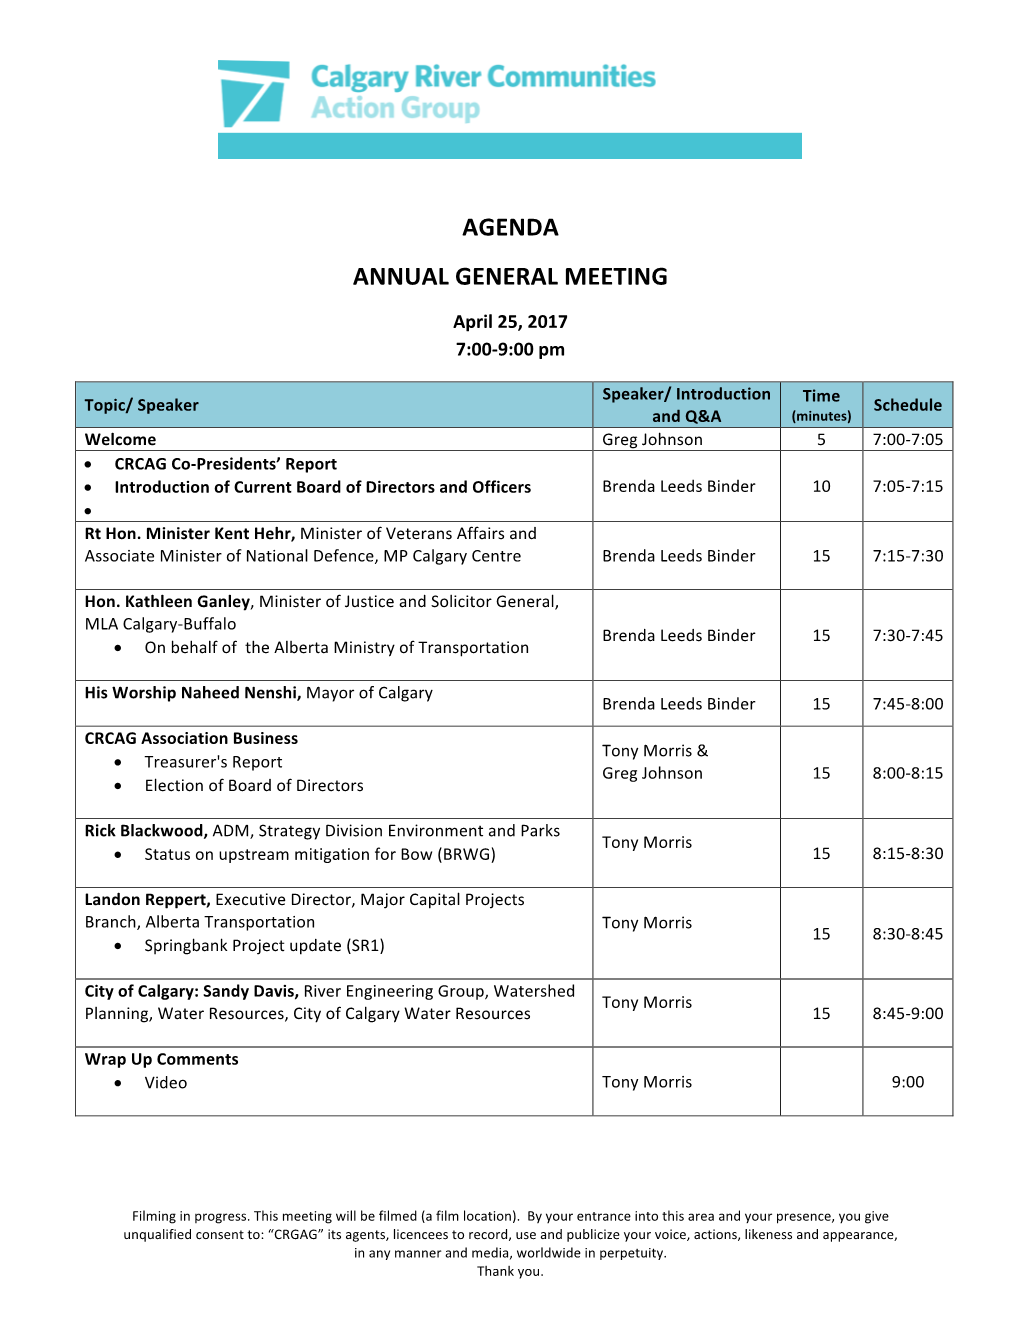 Agenda Annual General Meeting